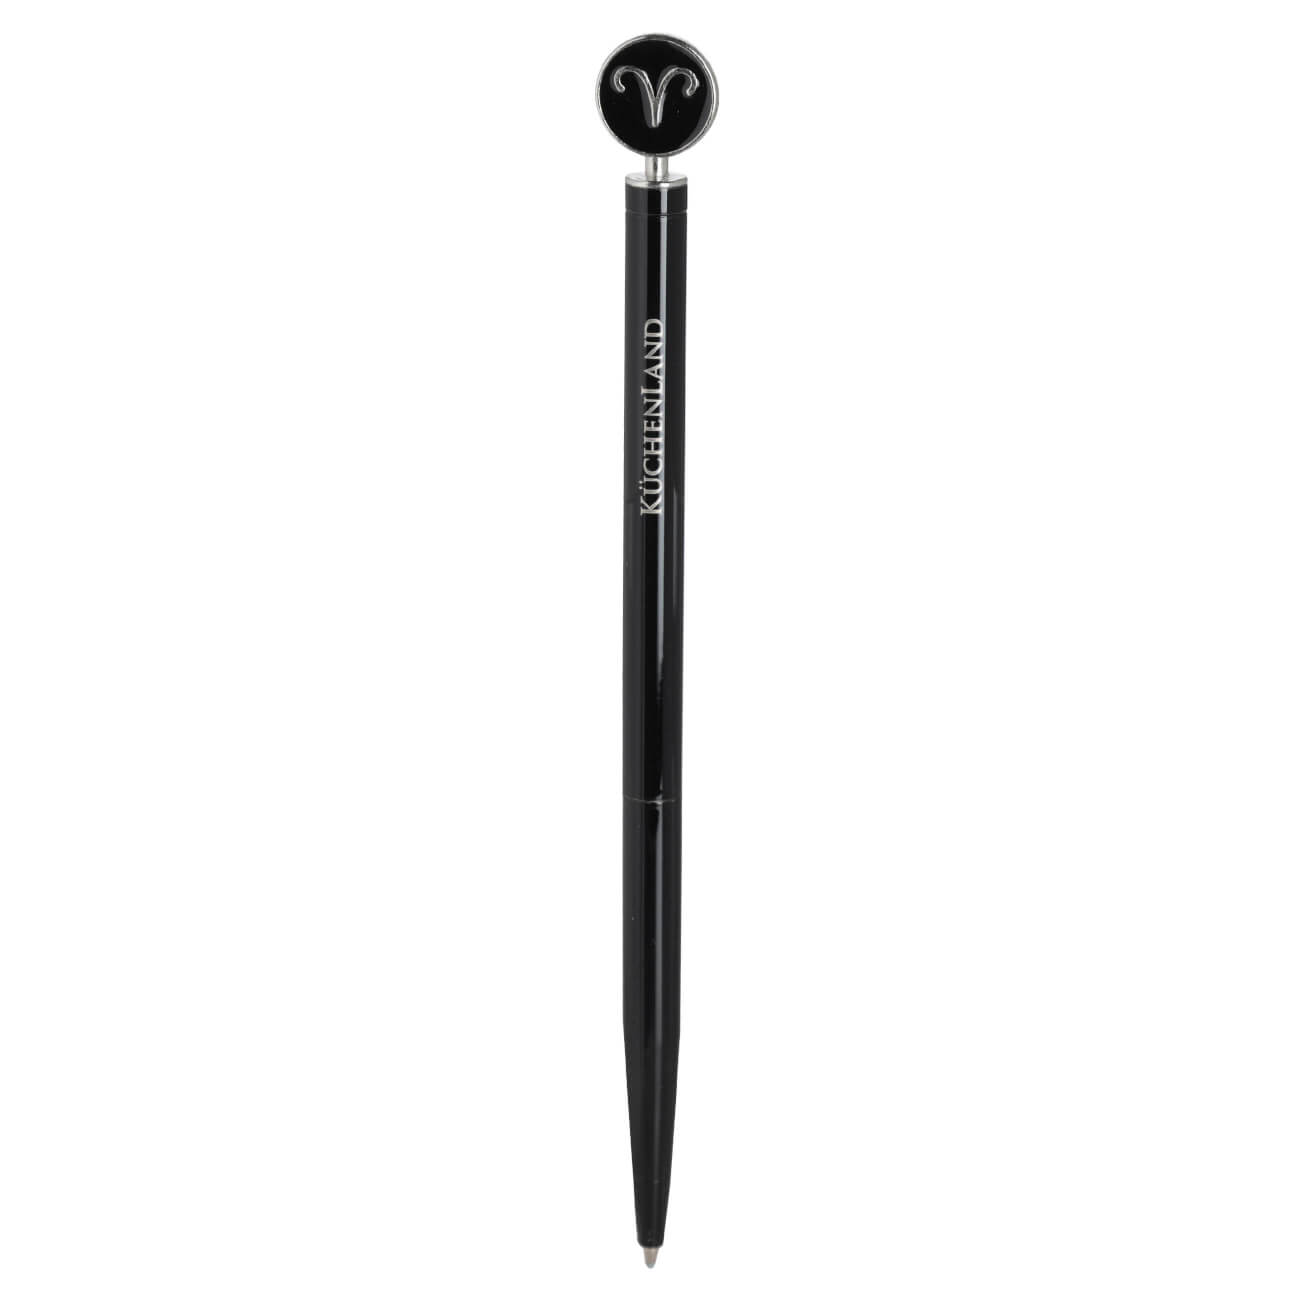 Ручка шариковая, 15 см, с фигуркой, сталь, черно-серебристая, Овен, Zodiac автоматическая шариковая ручка стамм